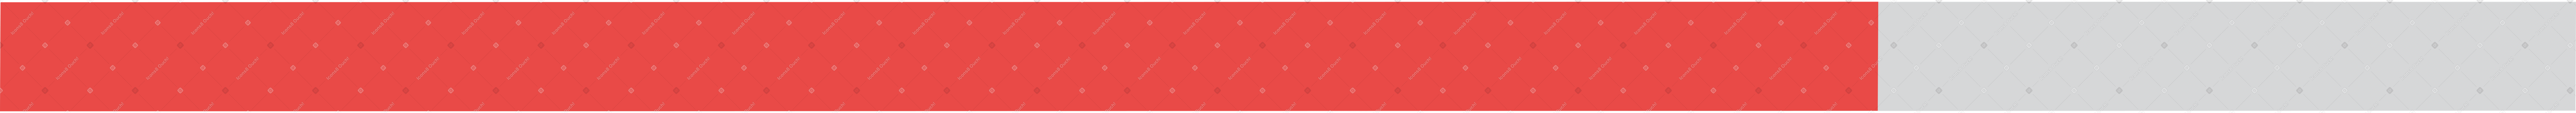 red progress bar Illustration in PNG, SVG